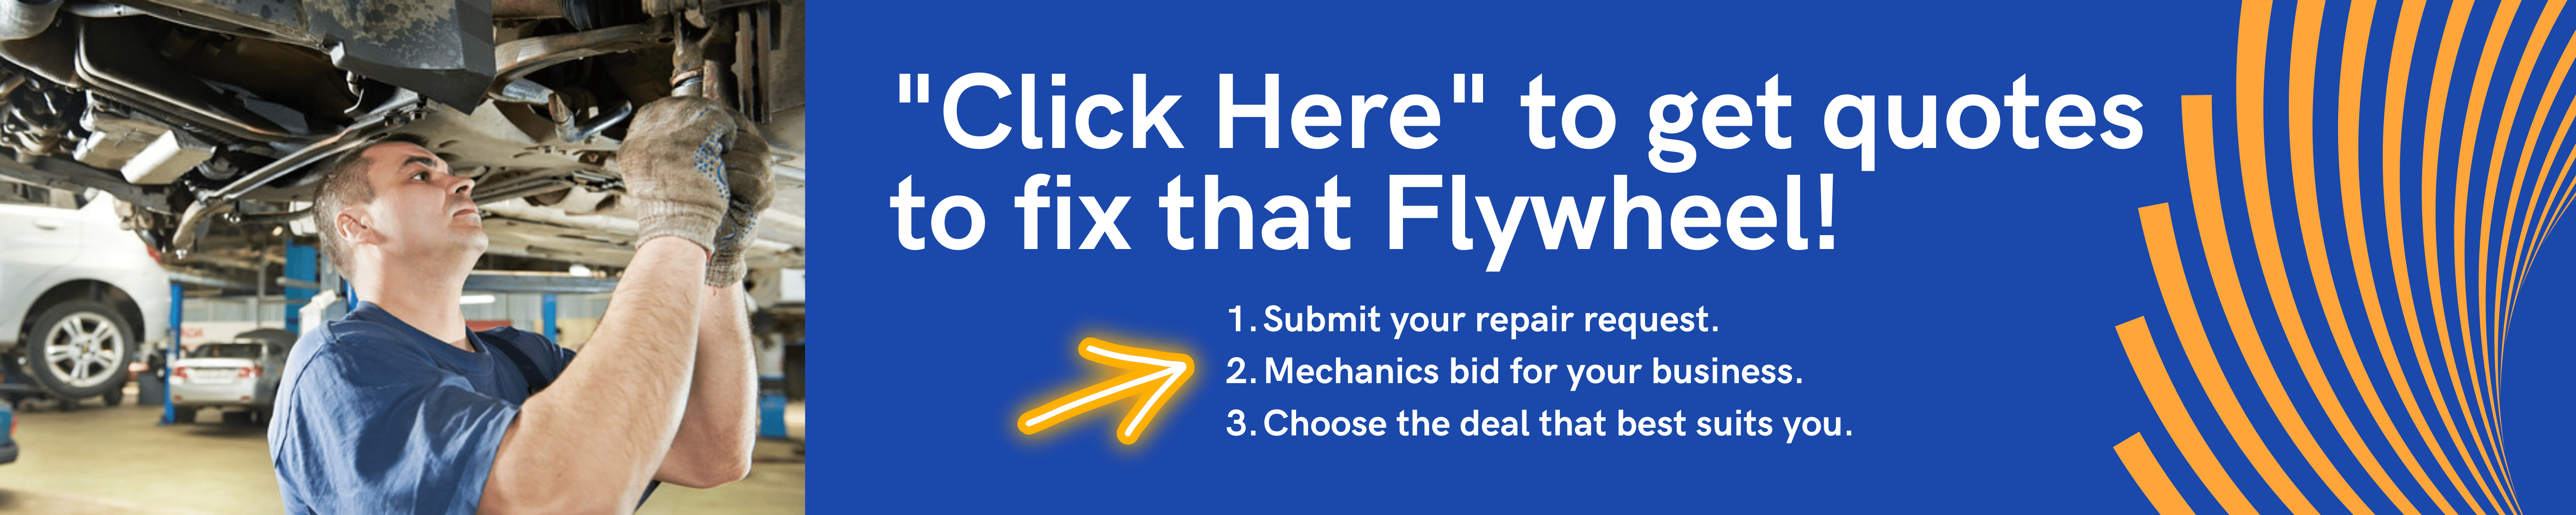 Flywheels Repairs